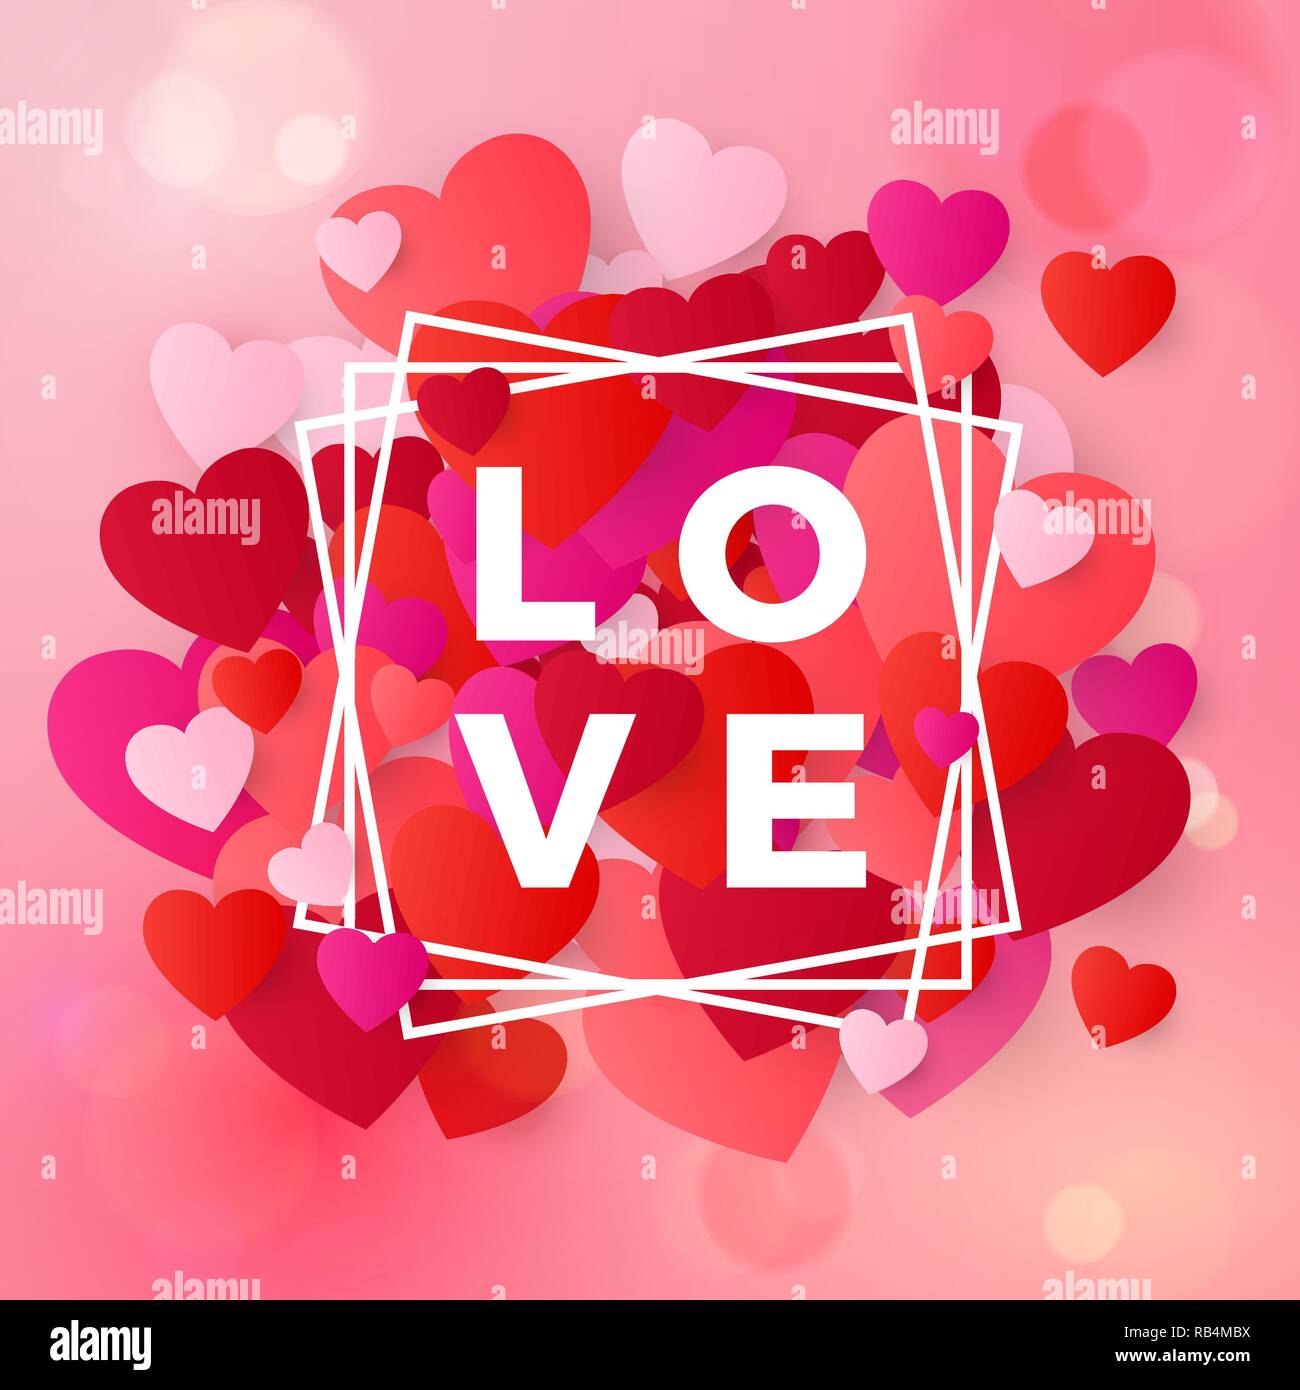 Felice il giorno di San Valentino di nozze e gli elementi di design. Progettazione di testo amore nella cornice bianca su sfondo rosa con cuori. Illustrazione Vettoriale Illustrazione Vettoriale